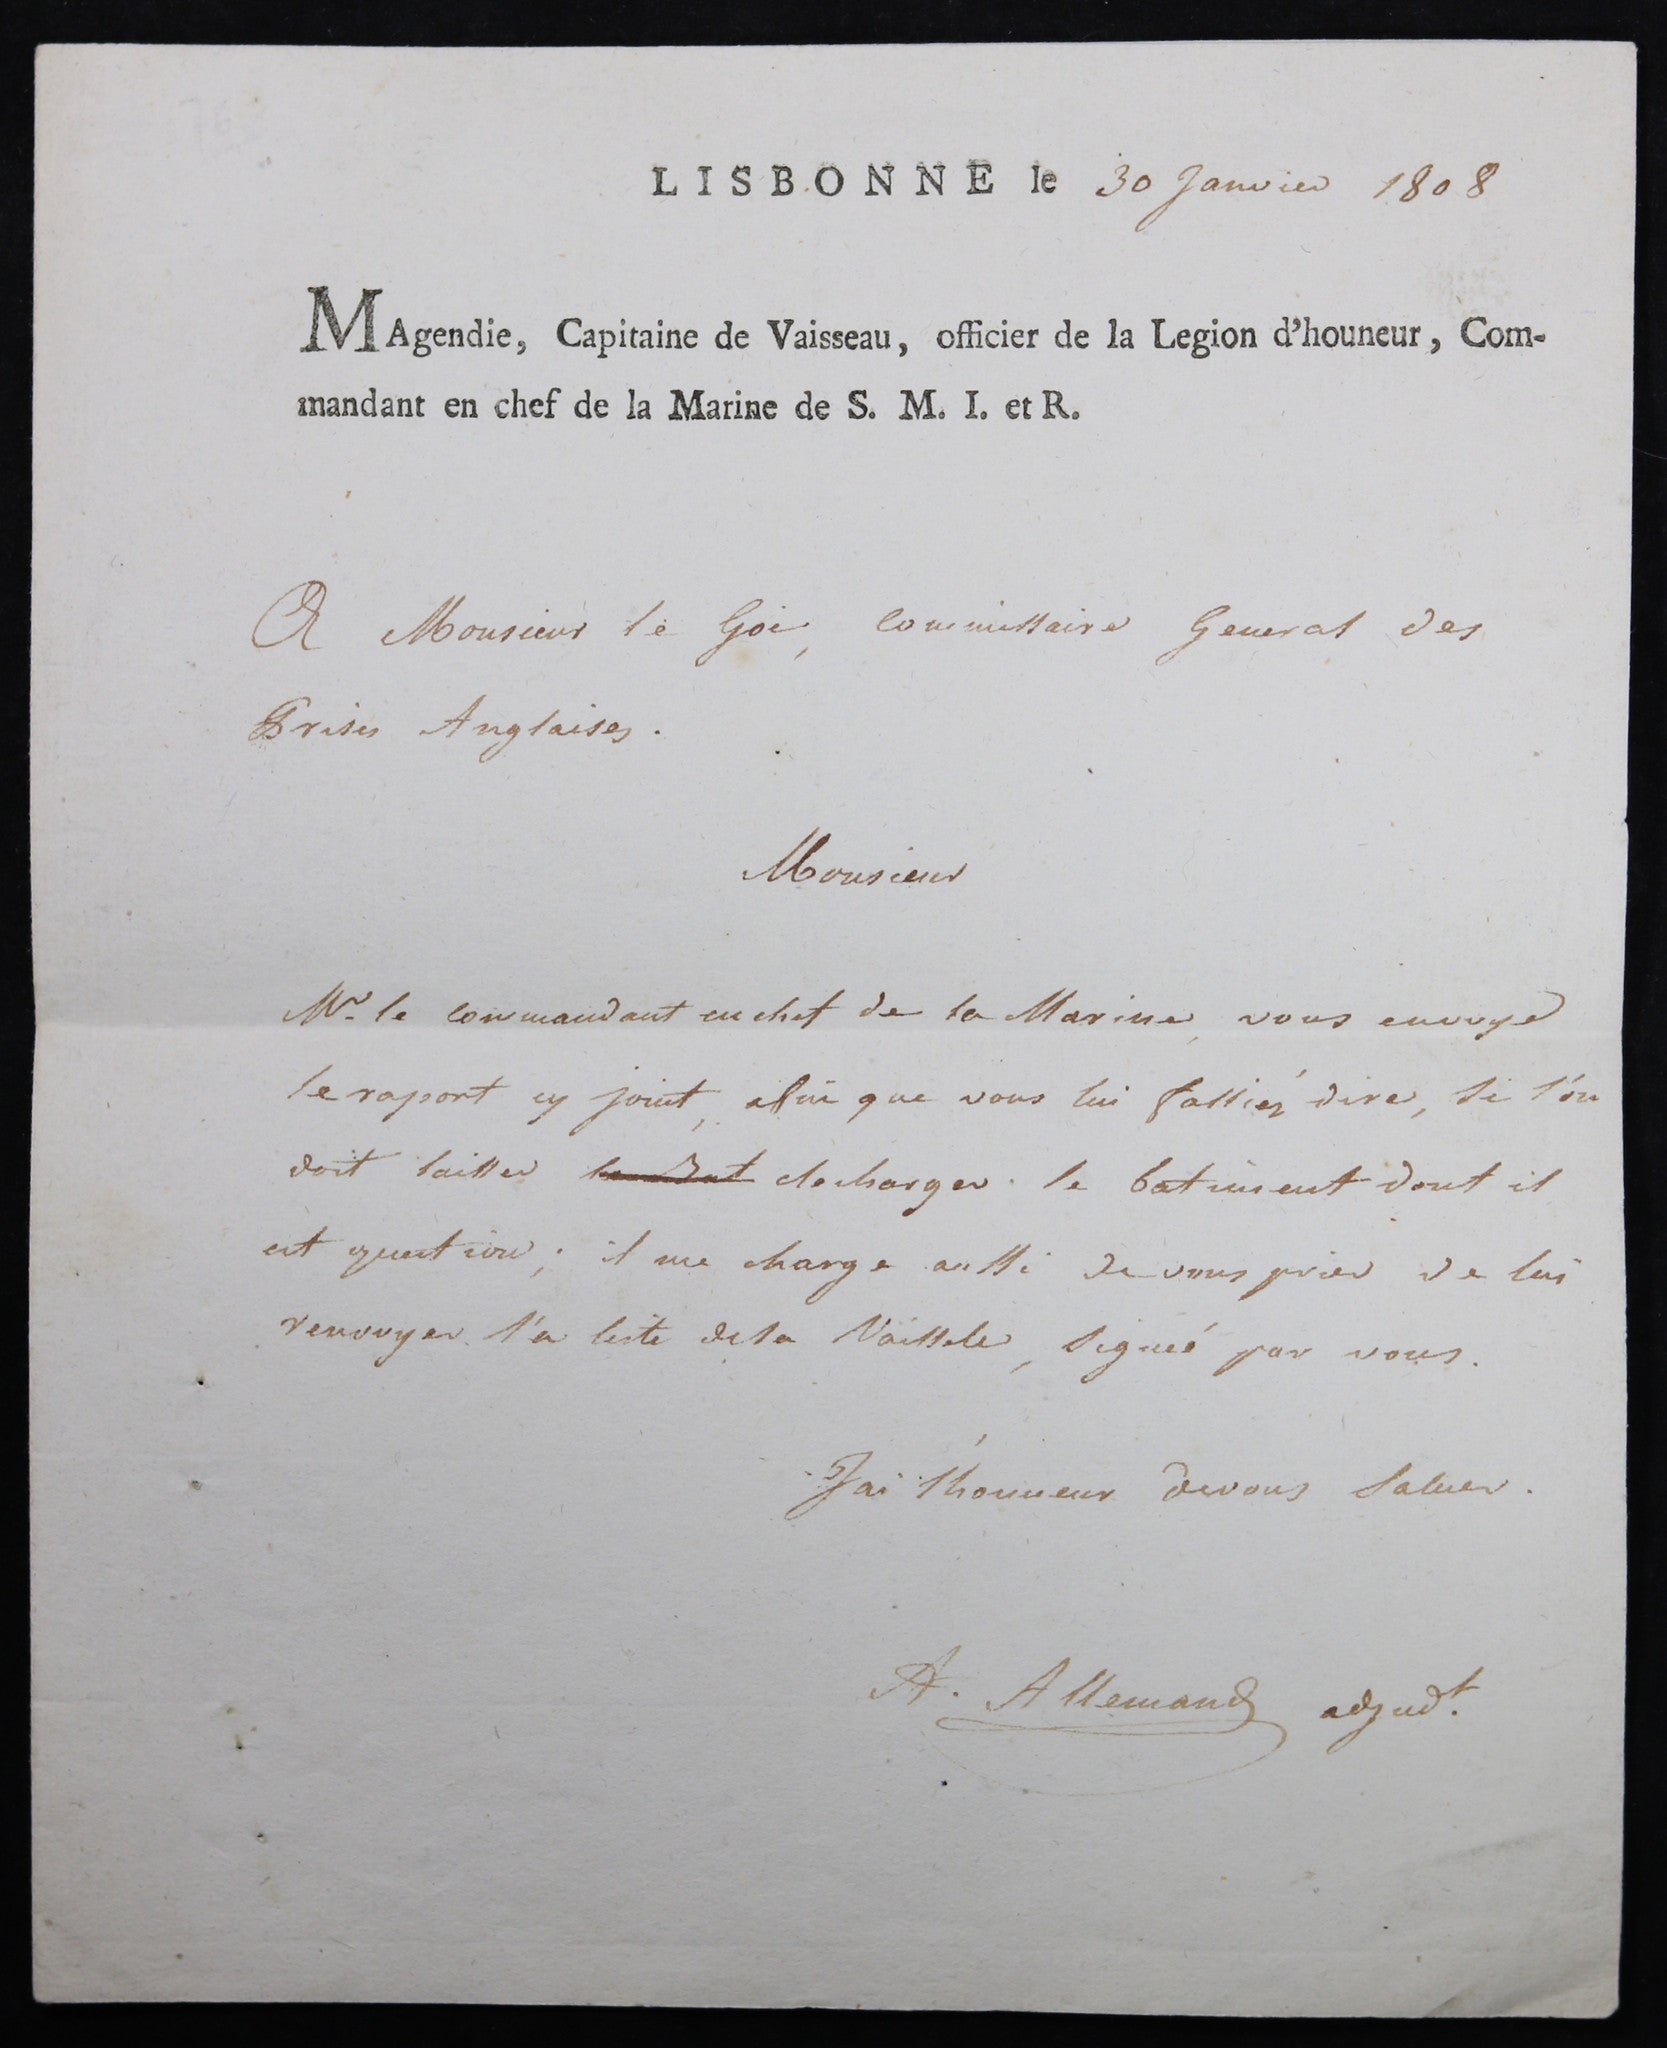 1808 lettre de Lisbone sur prises anglaises, Cpt. Magendie Marine de S.M.I. et R.